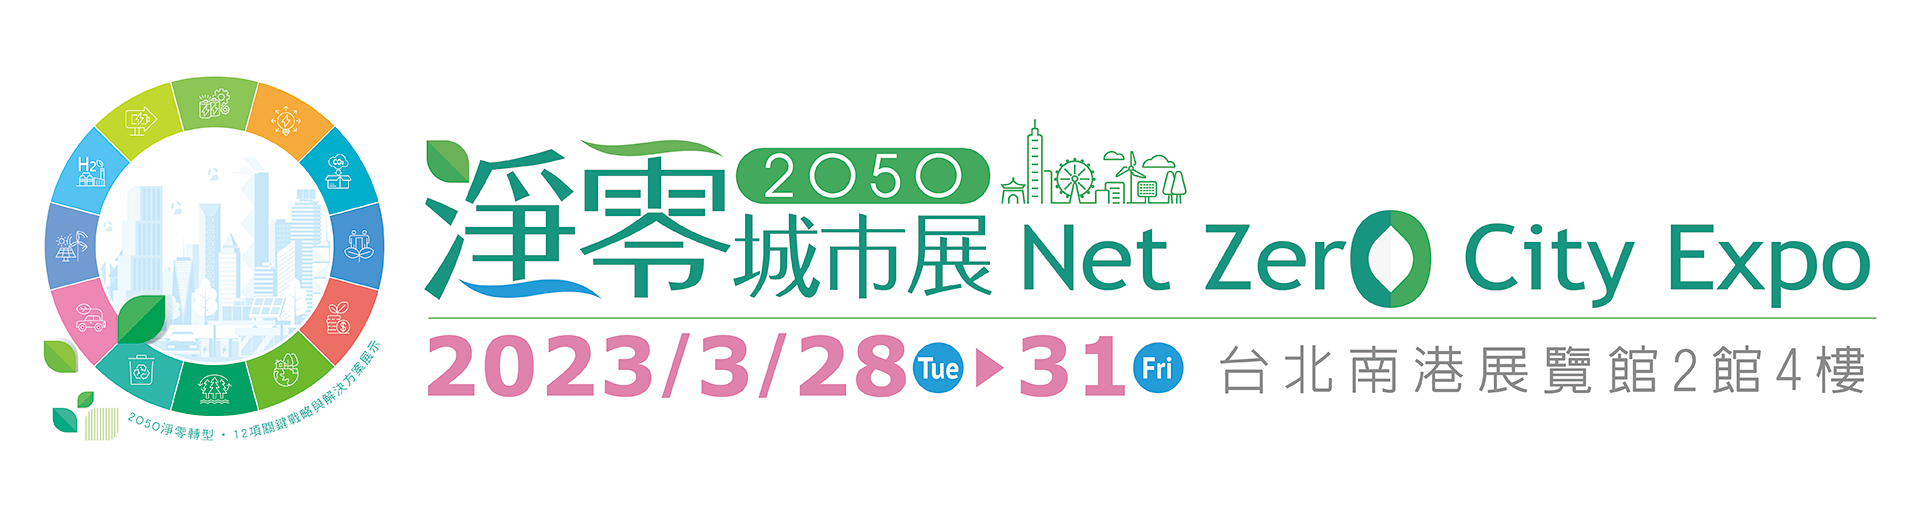 首屆淨零城市展2023年3月28日登場 匯集社會各界力量共同落實淨零排放